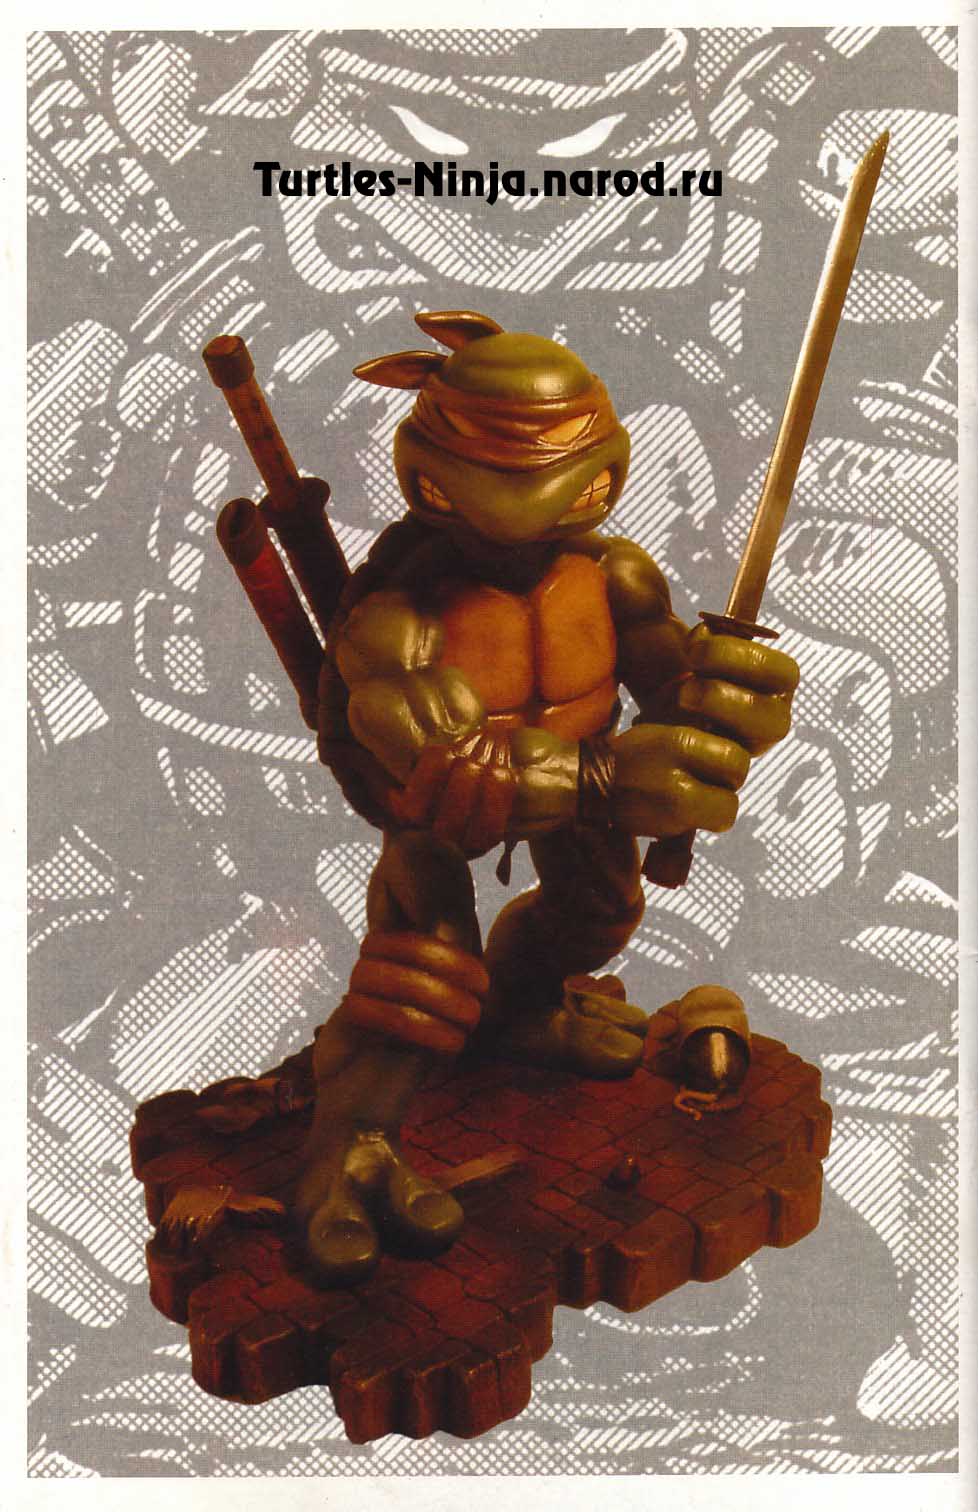 Read online TMNT: Teenage Mutant Ninja Turtles comic -  Issue #5 - 35